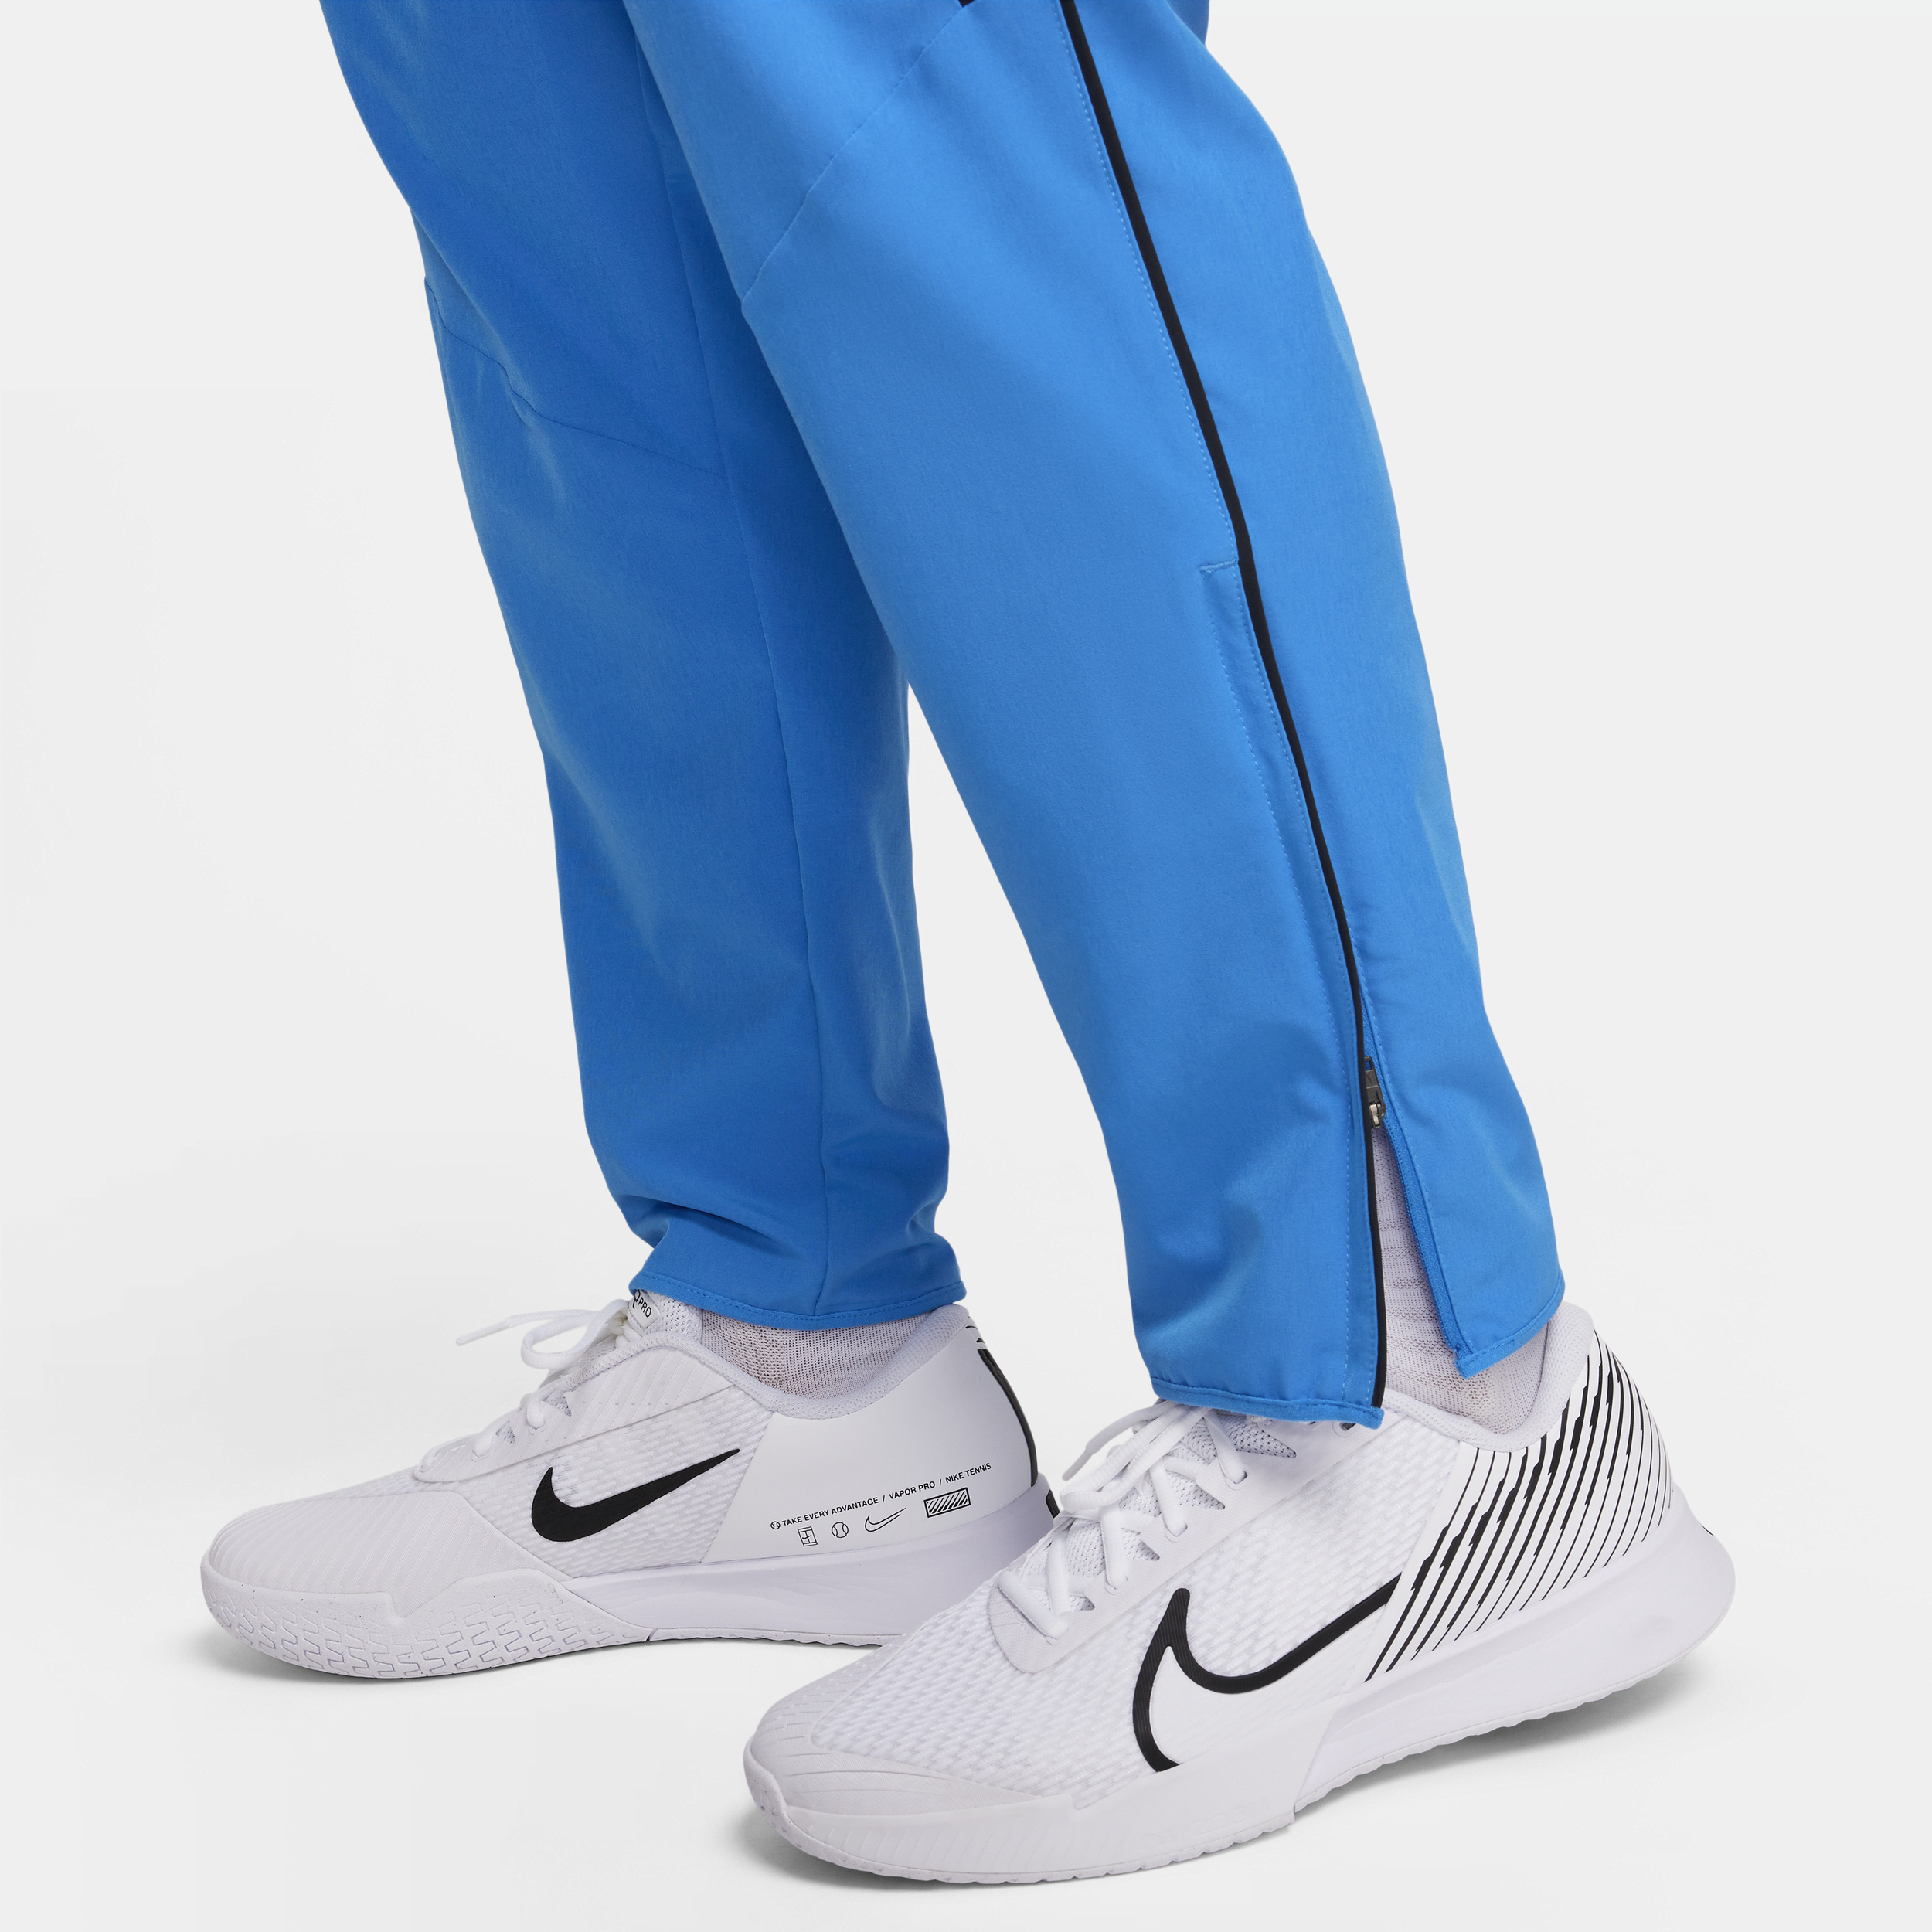 Nike Court Advantage Dri-FIT tennisbroek voor heren Blauw